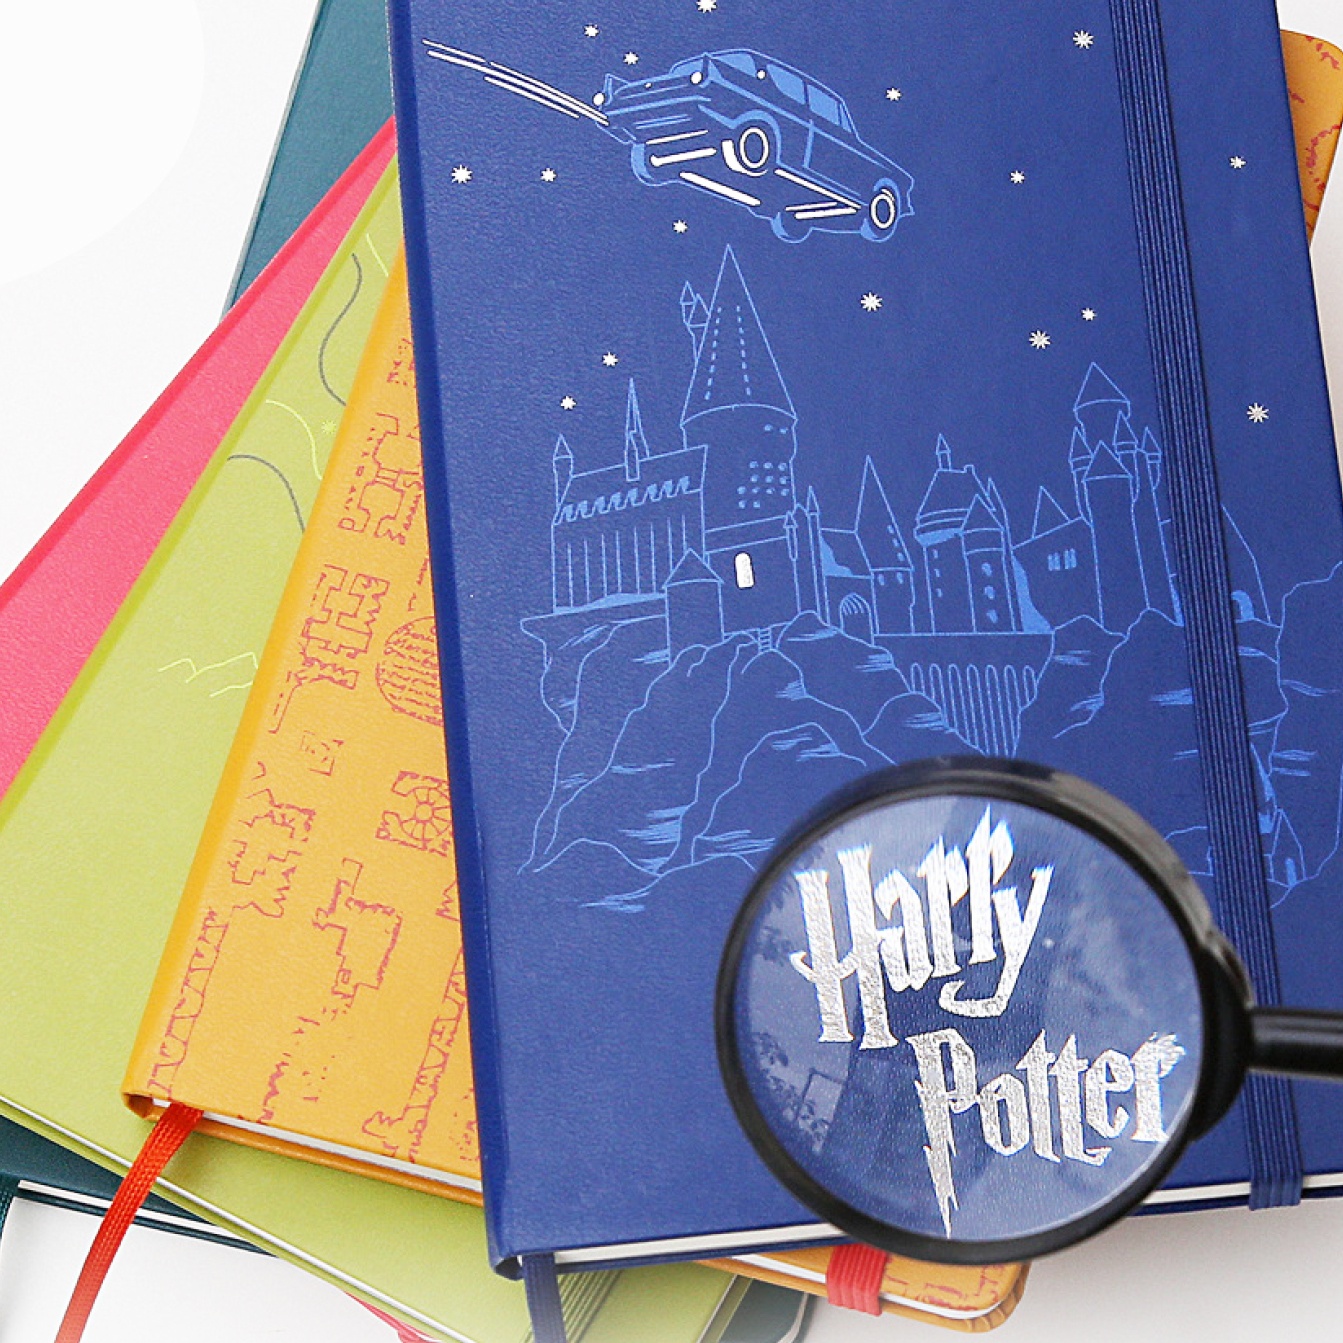 Hardcover Large Harry Potter Blue in der Gruppe Papier & Blöcke / Schreiben und Notizen / Notizbücher bei Pen Store (100465)